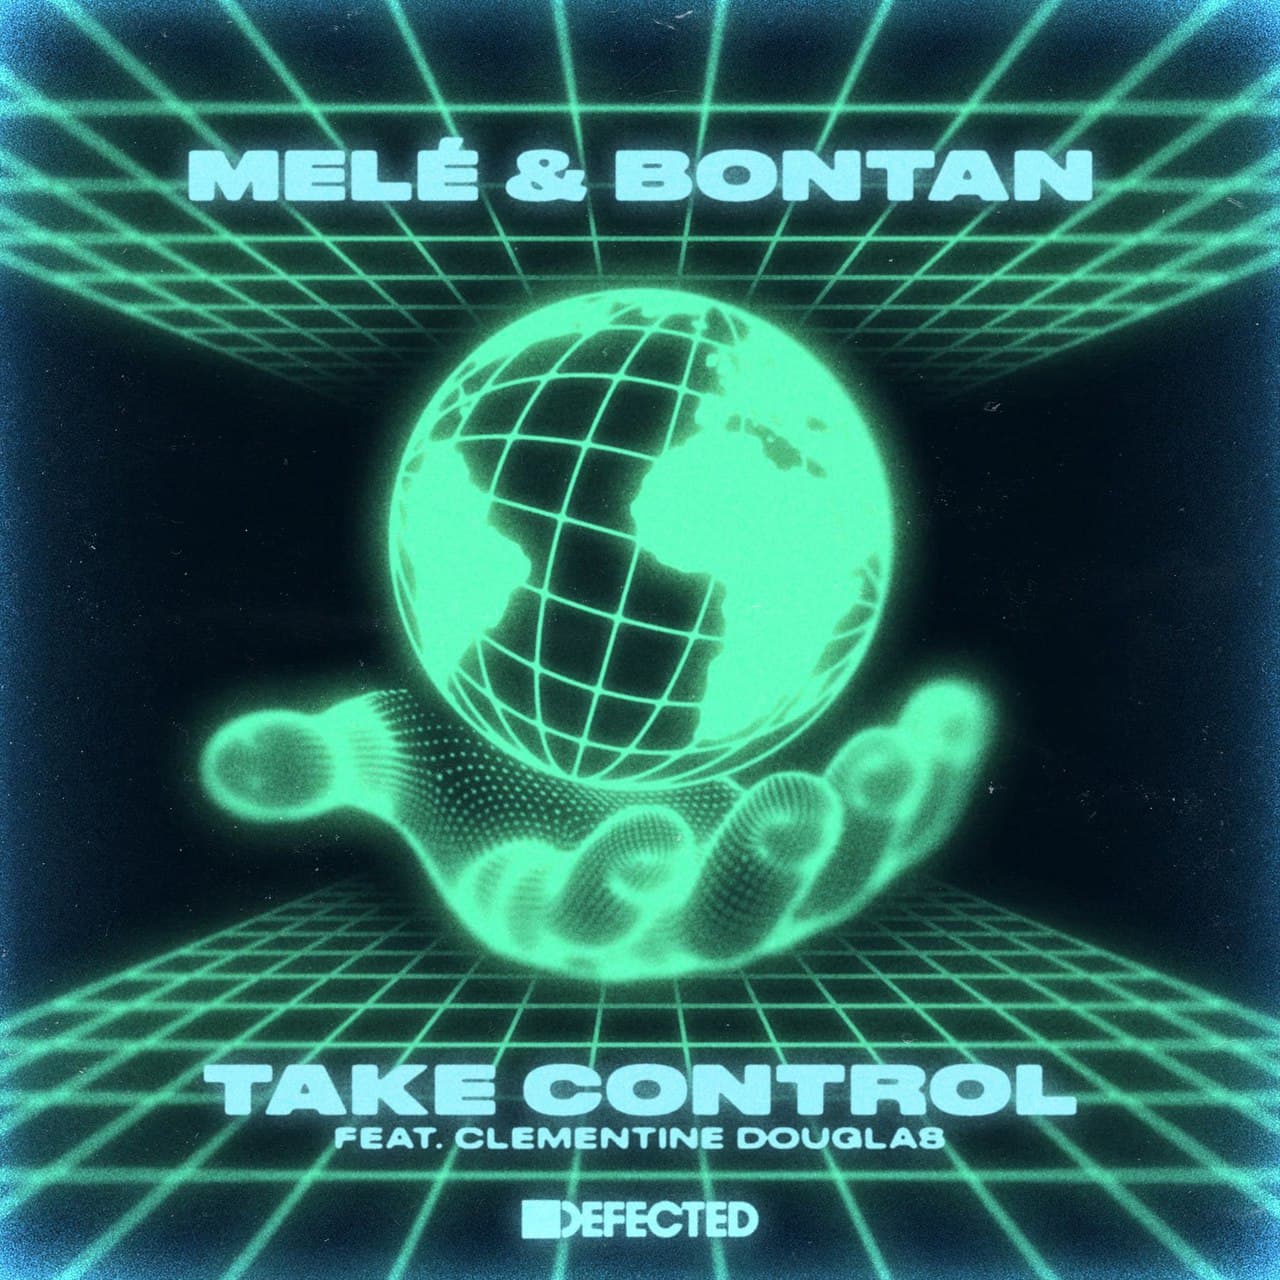 Mele & Bontan — Take Control (Extended Mix)